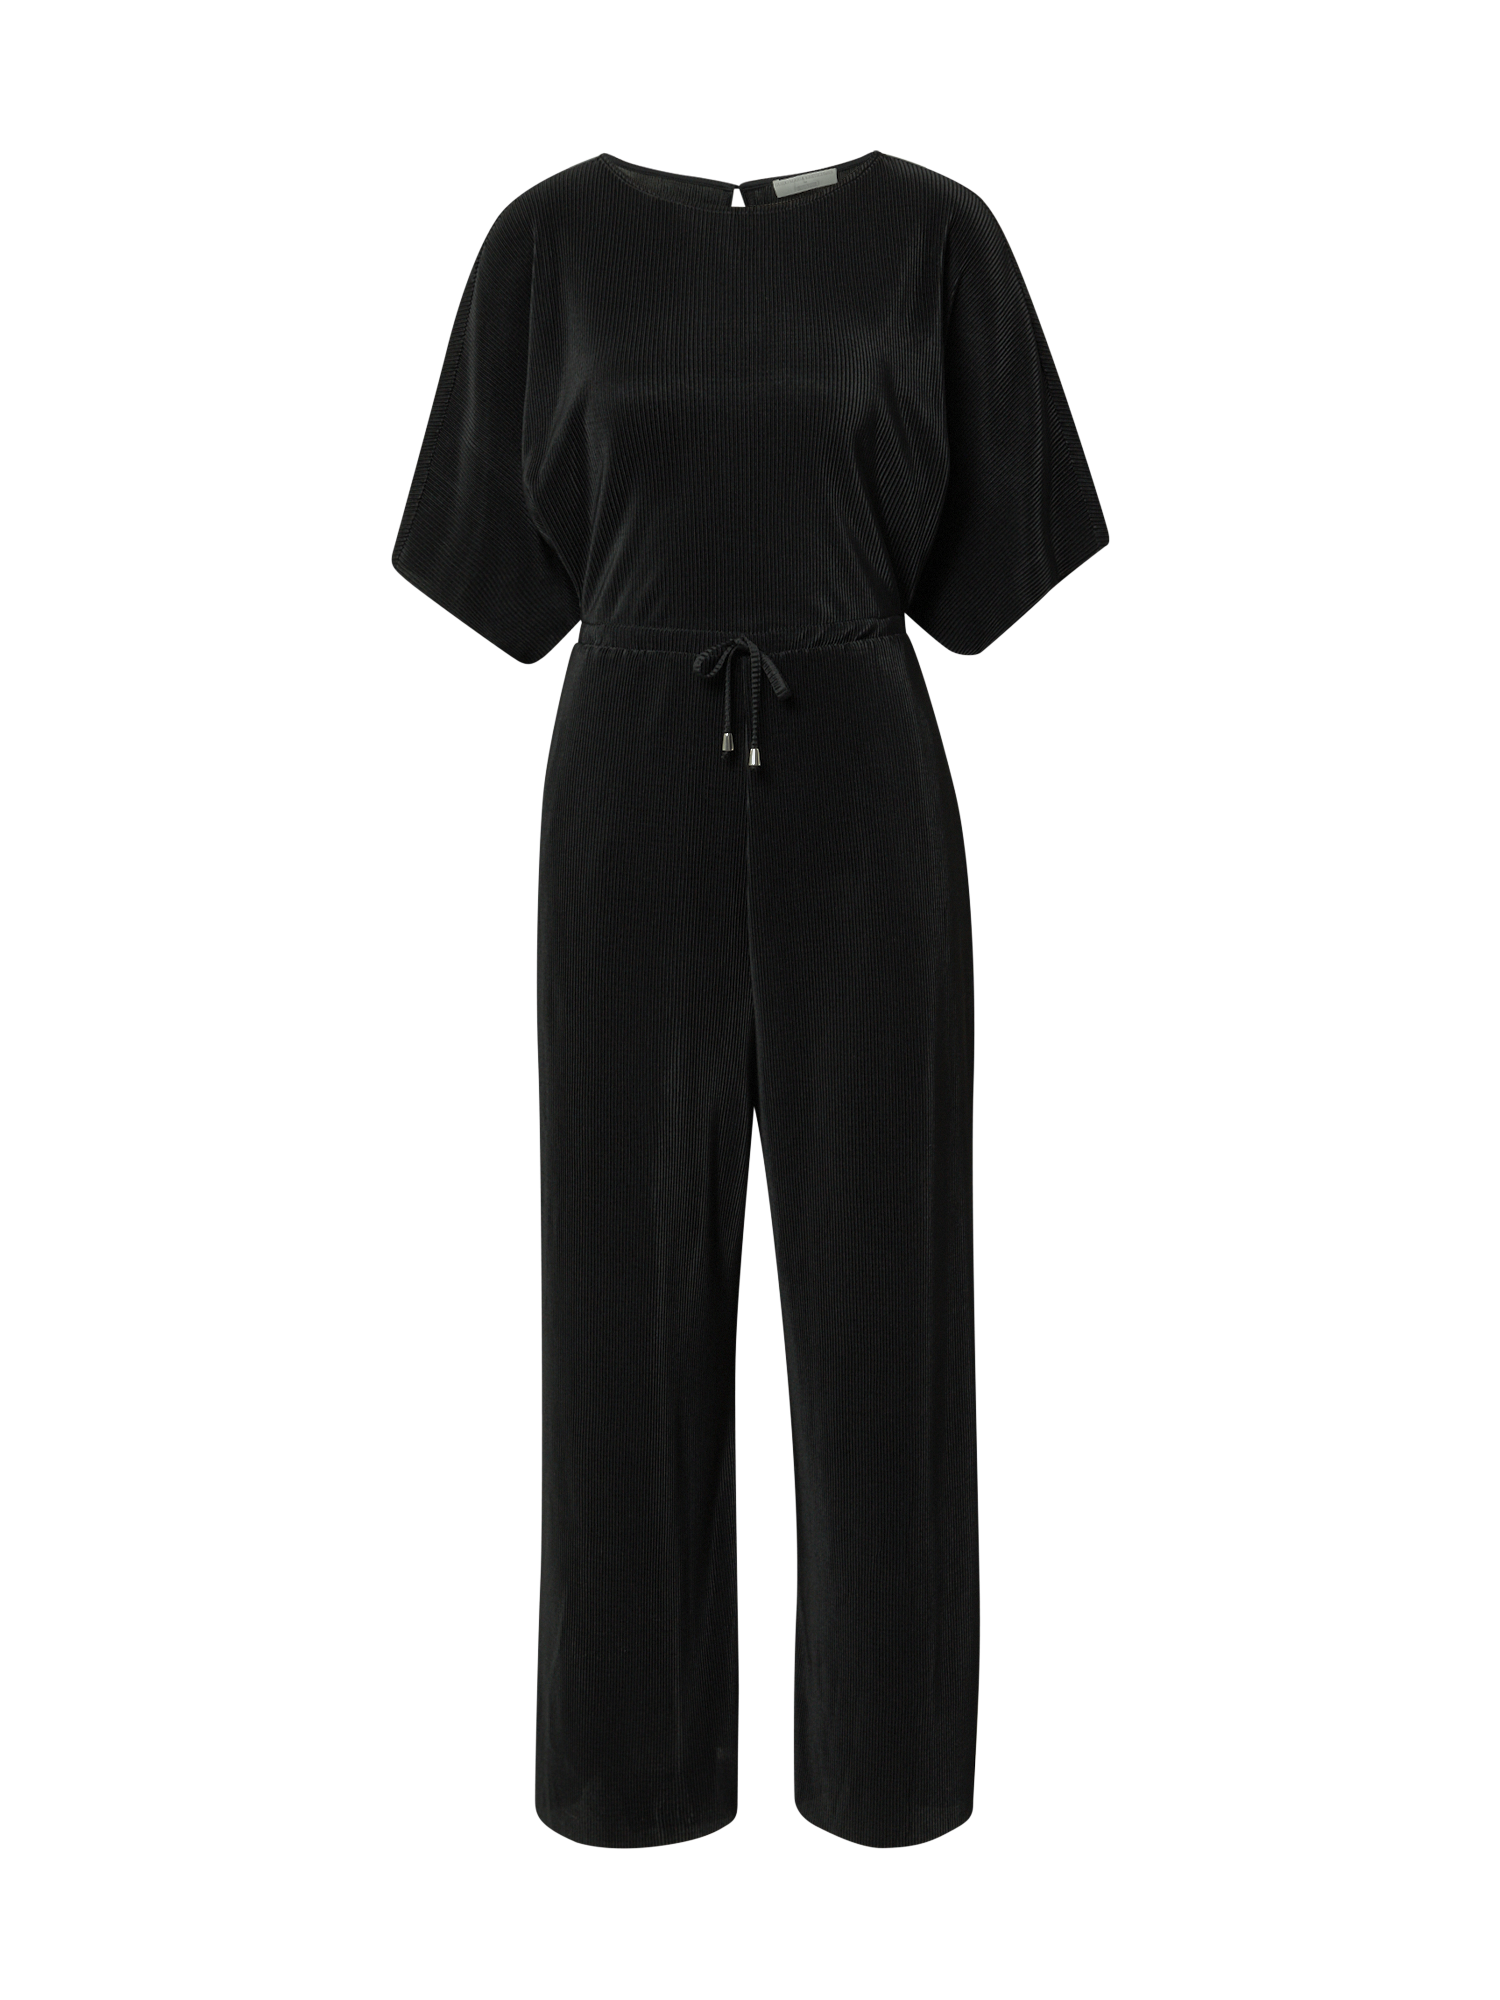 Odzież Kobiety Guido Maria Kretschmer Collection Kombinezon Arabella w kolorze Czarnym 